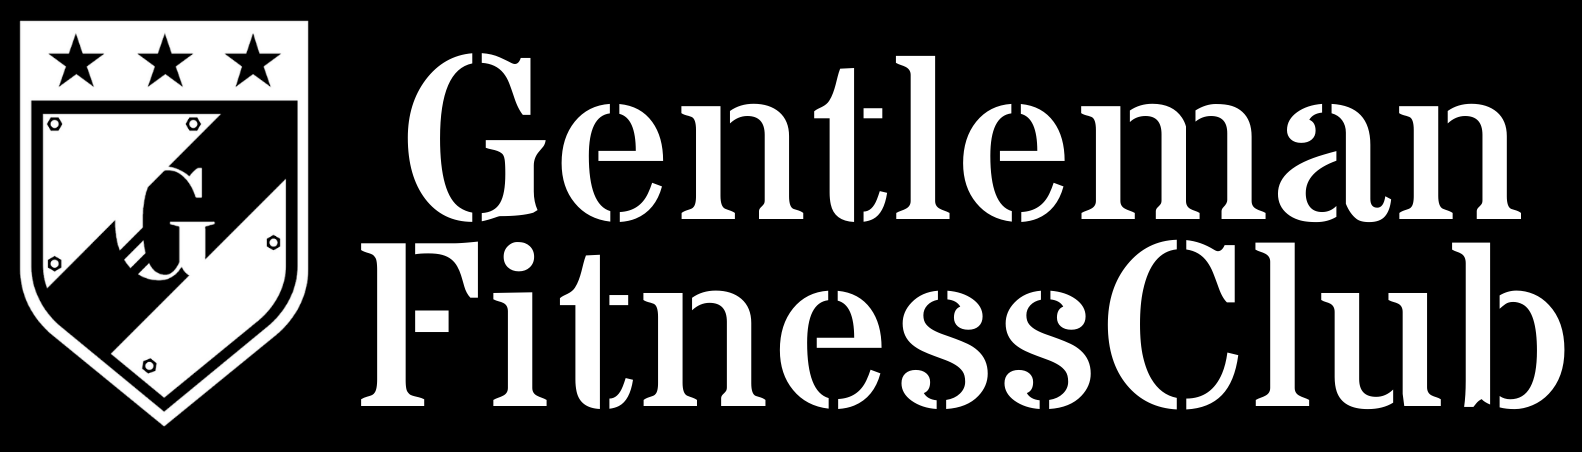 GentlemanFitnessClub ロゴ